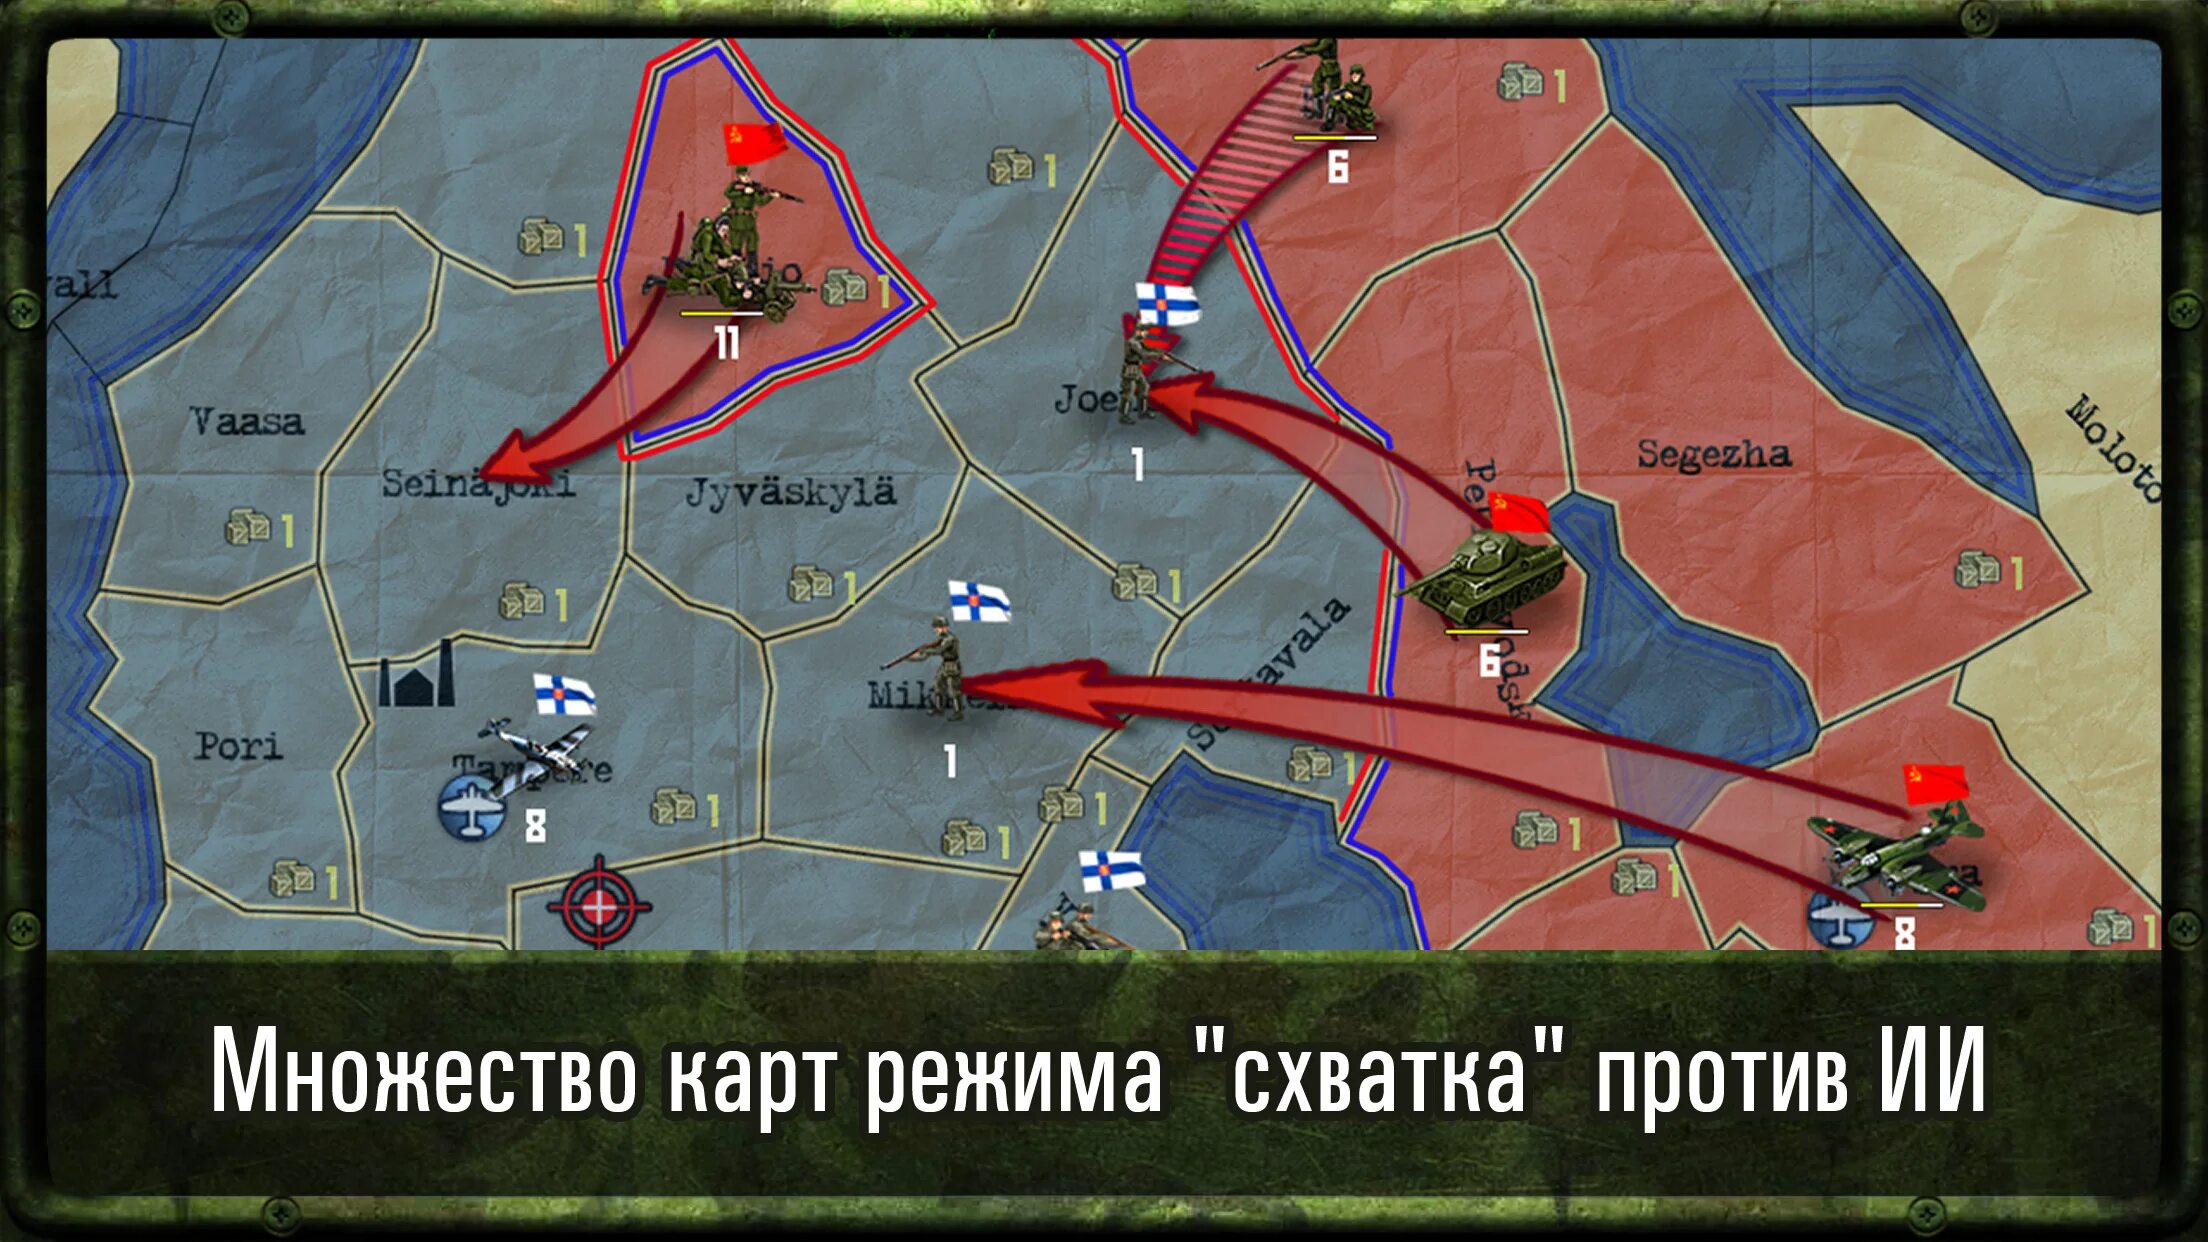 Strategy and Tactics ww2. Карта для стратегической игры. Военная стратегия карта.